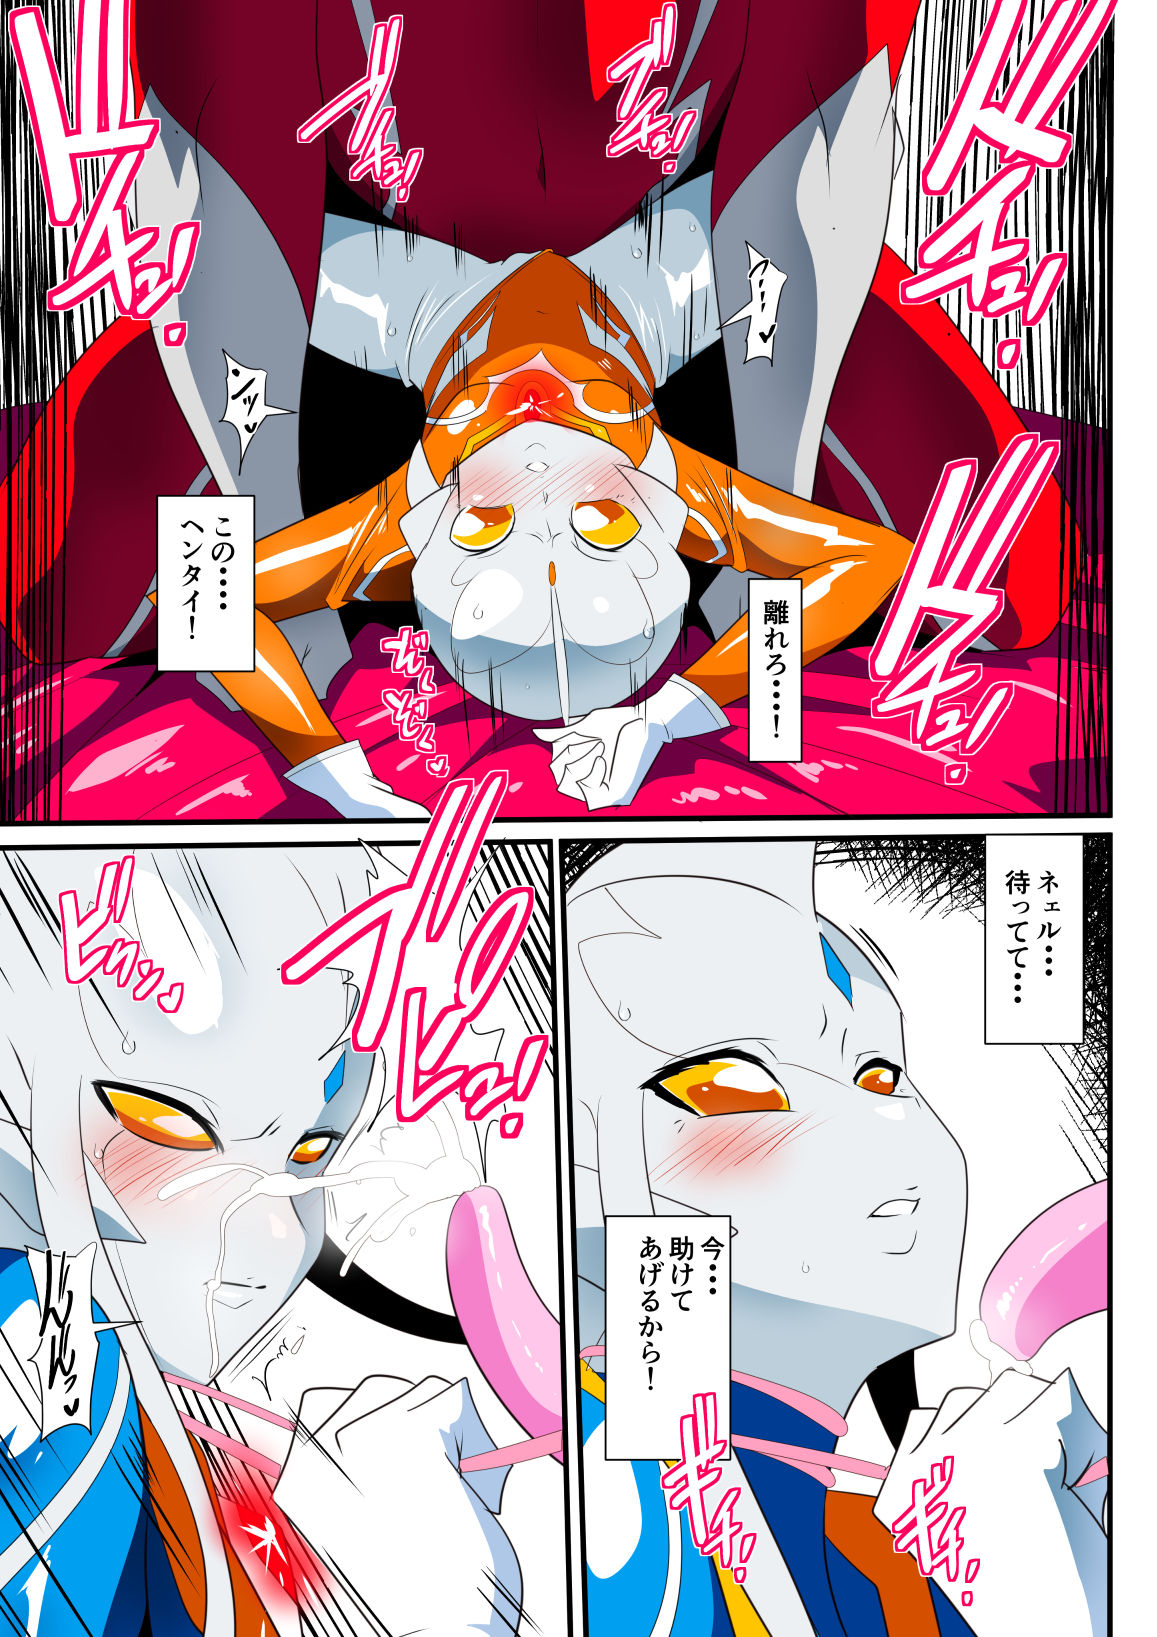 [Warabimochi] Ginga no Megami Netise IX (Ultraman) page 5 full